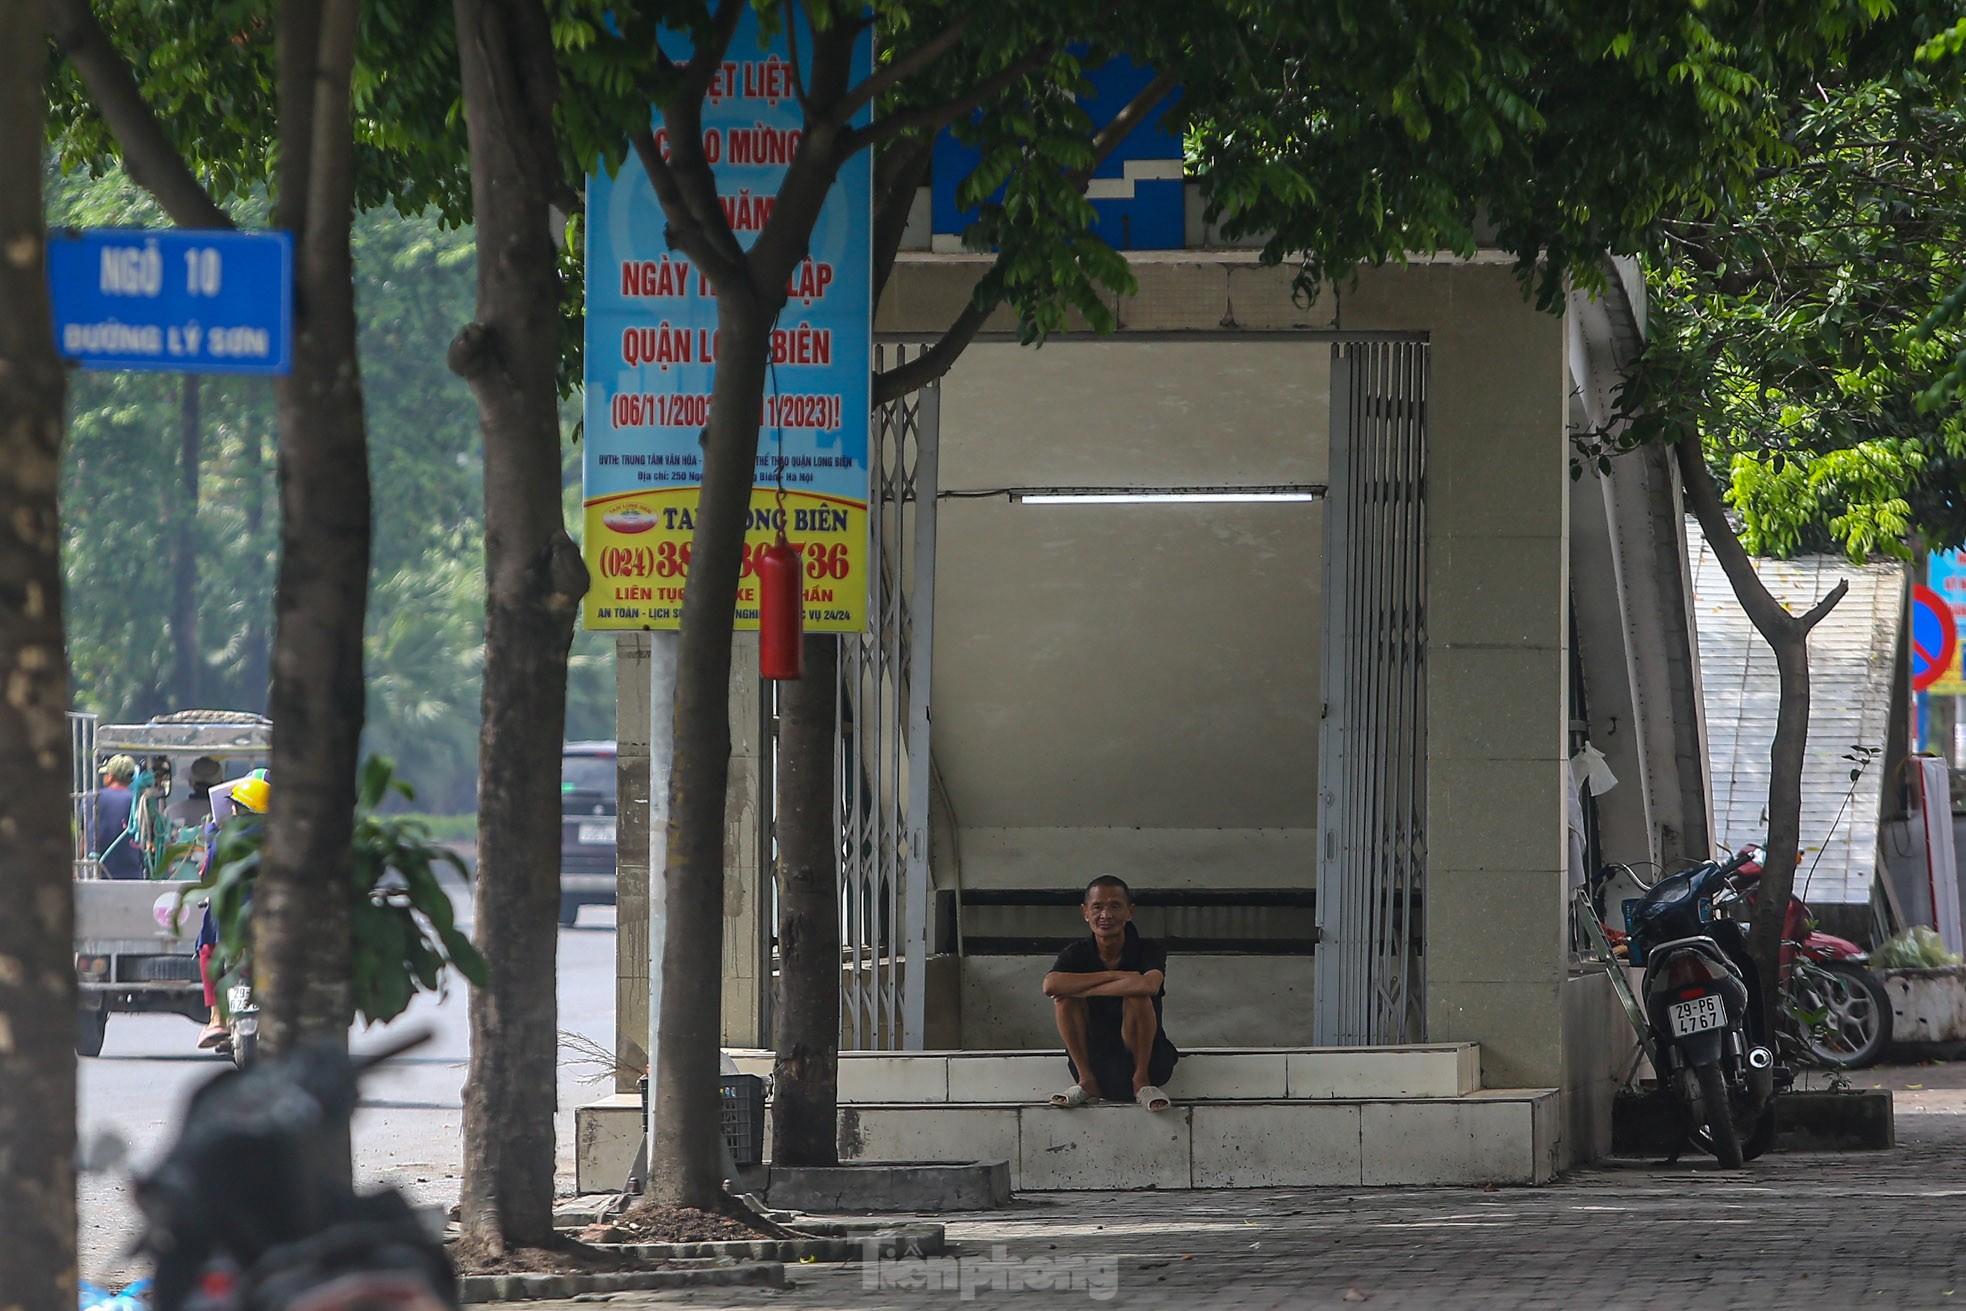 Hầm đi bộ bạc tỷ ở Hà Nội đang bị 'lãng quên' ở Hà Nội - Ảnh 5.